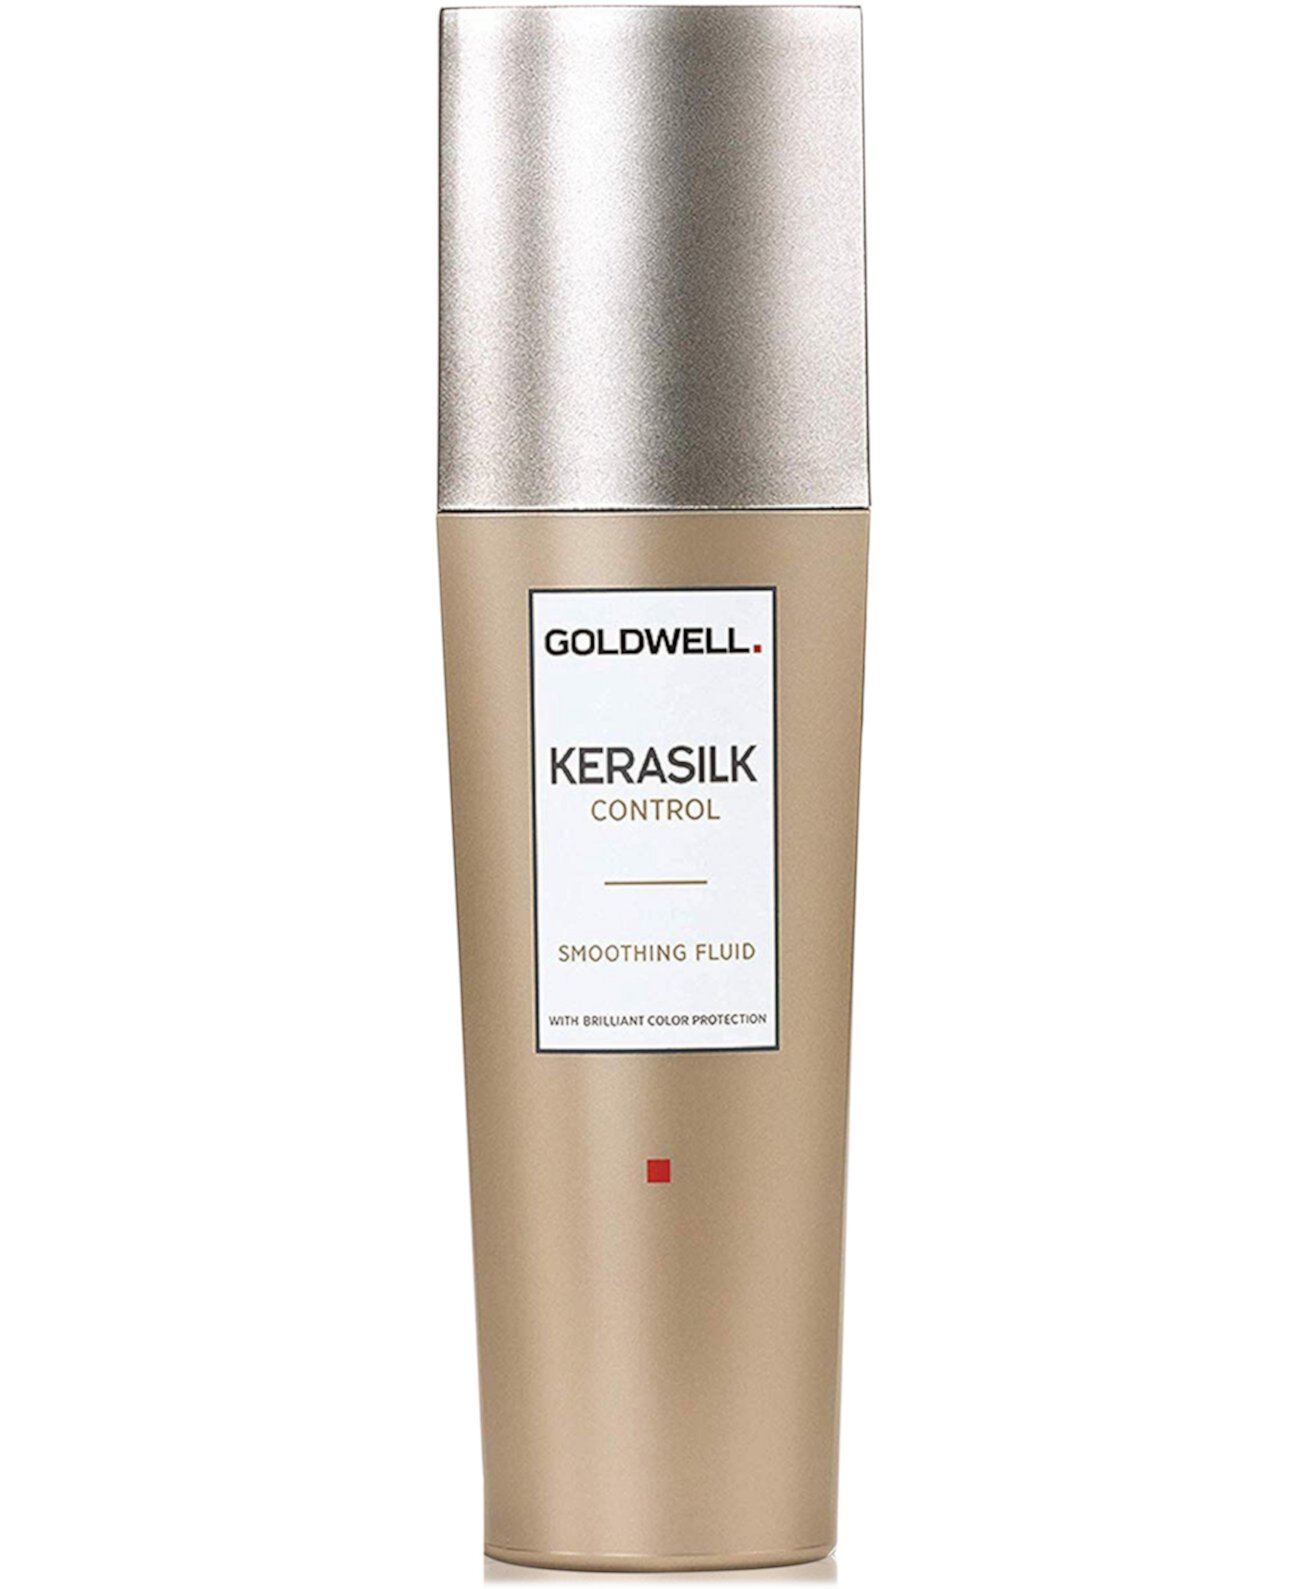 Разглаживающая жидкость Kerasilk Control, 2,5 унции, от PUREBEAUTY Salon & Spa Goldwell